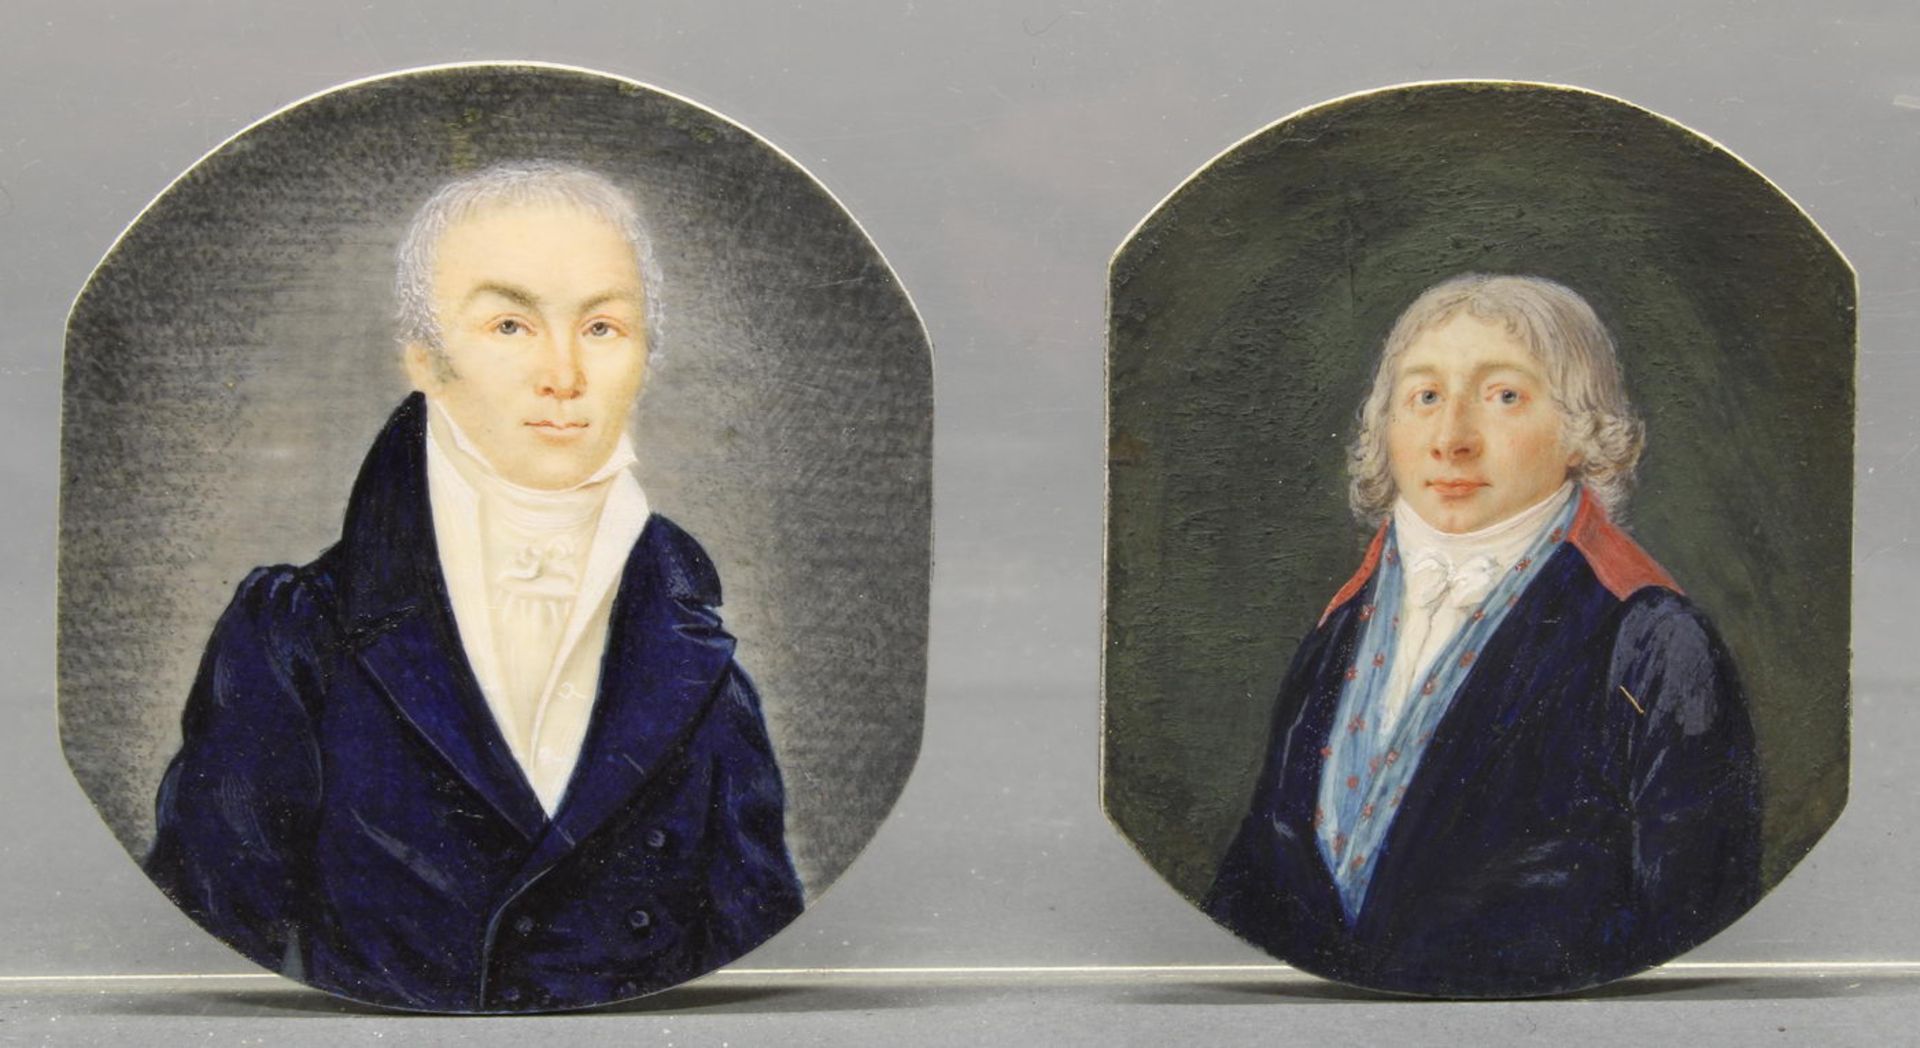 2 Miniaturen, "Herrenporträts", Gouachen, auf Karton aufgezogen, wohl um 1800, 6 x 4.5 cm bzw. 5.5